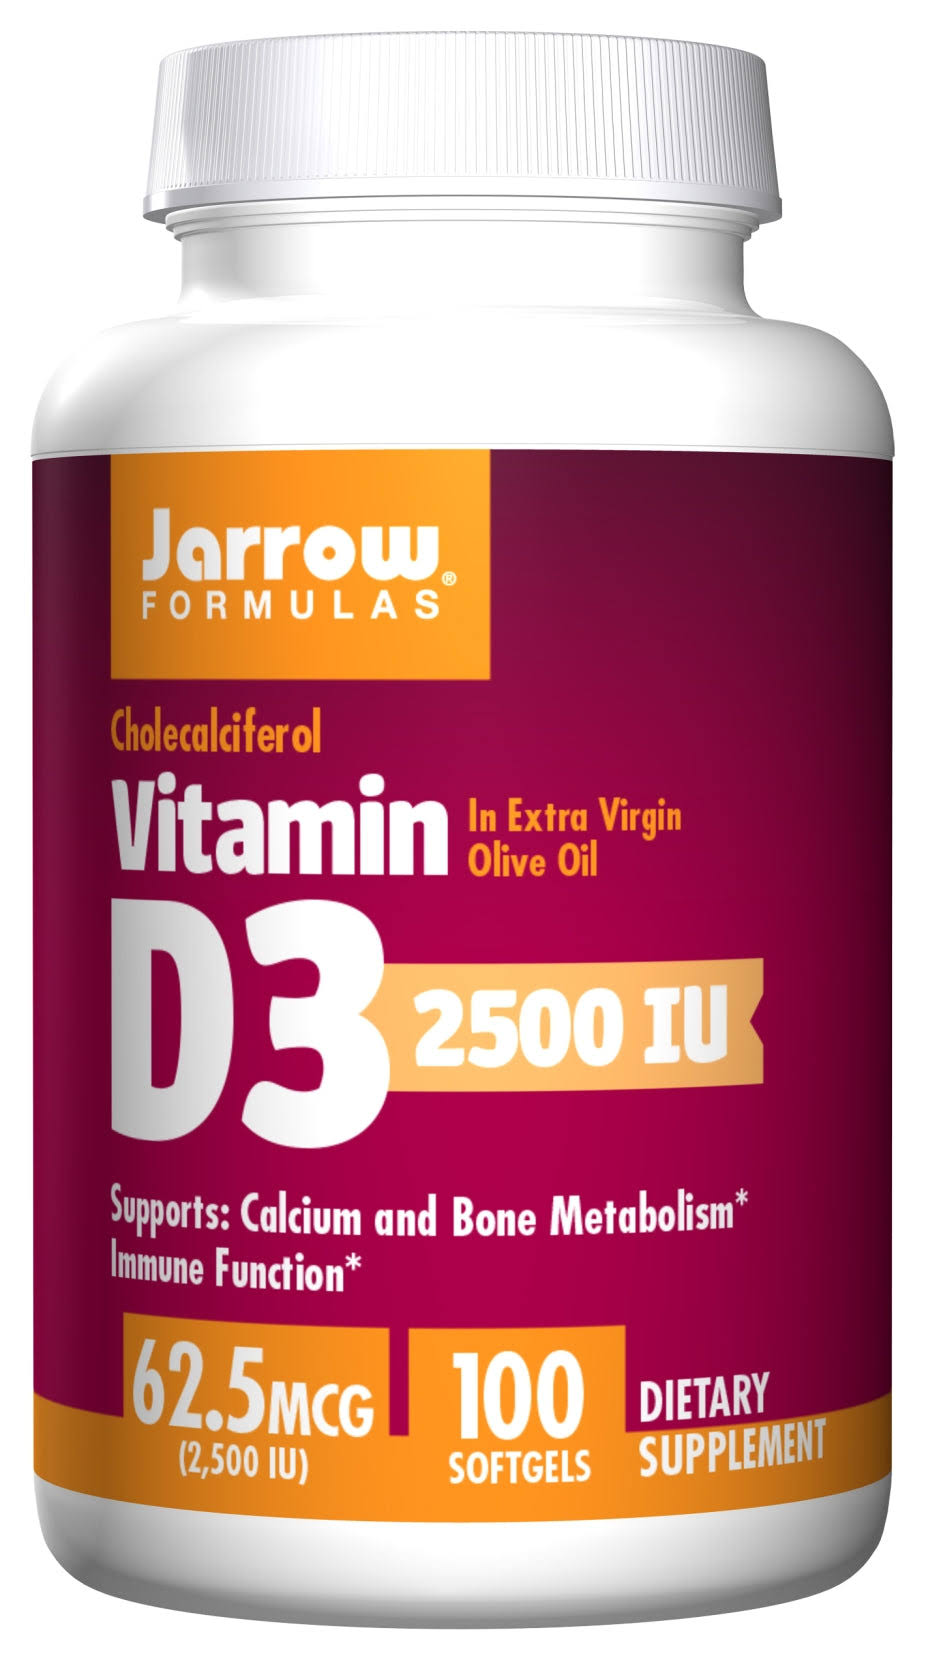 Jarrow Formulas Vitamin D3 - 2500IU, 100 Softgels